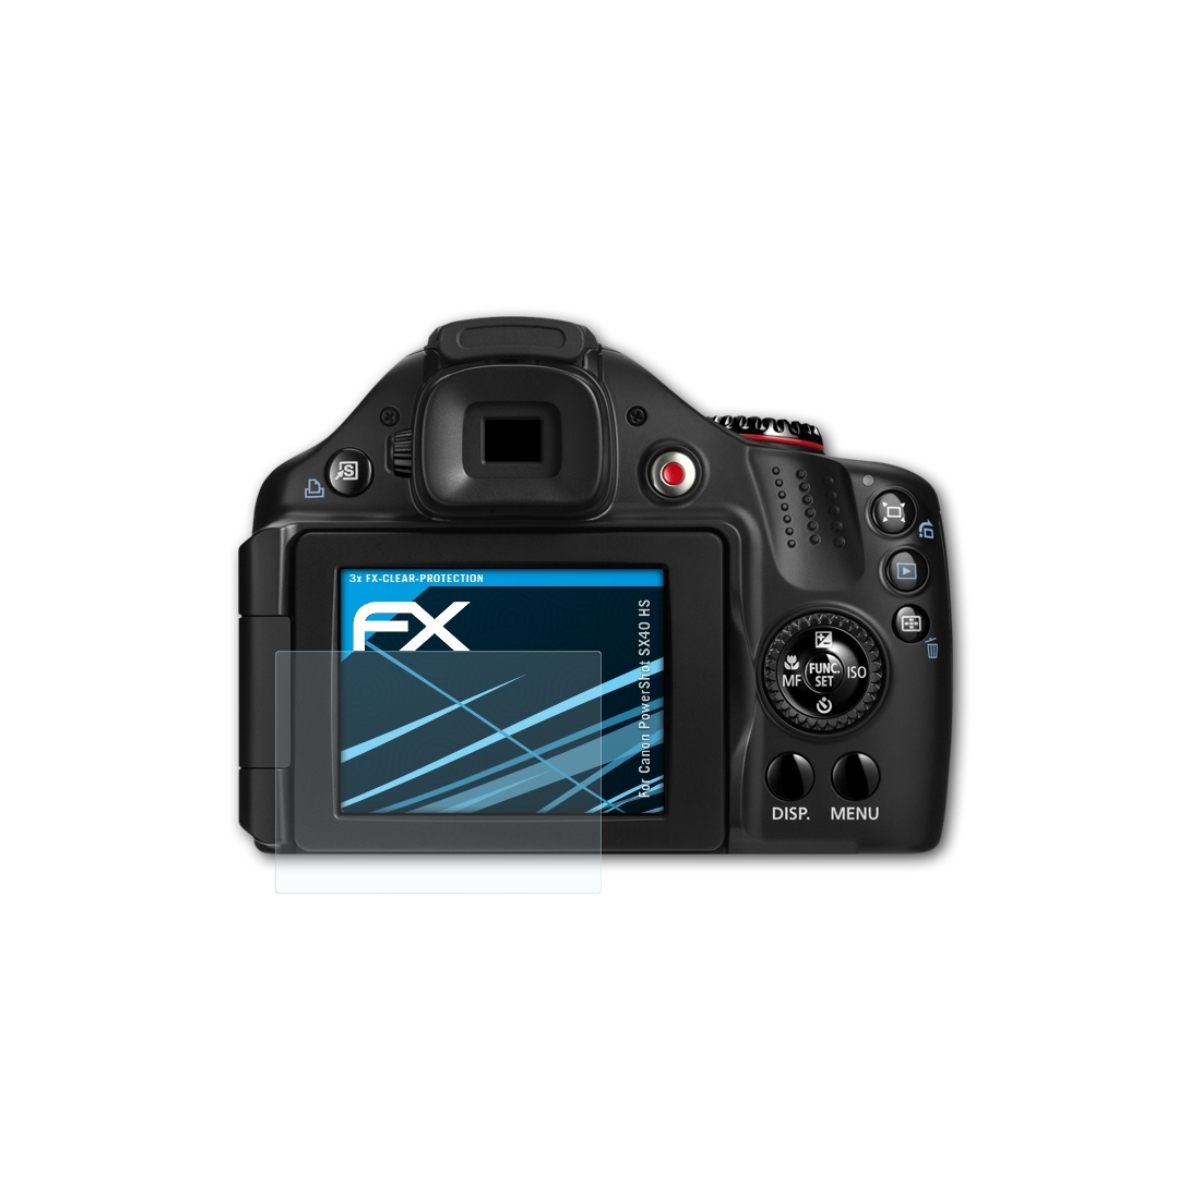 Displayschutz(für 3x HS) ATFOLIX SX40 Canon FX-Clear PowerShot